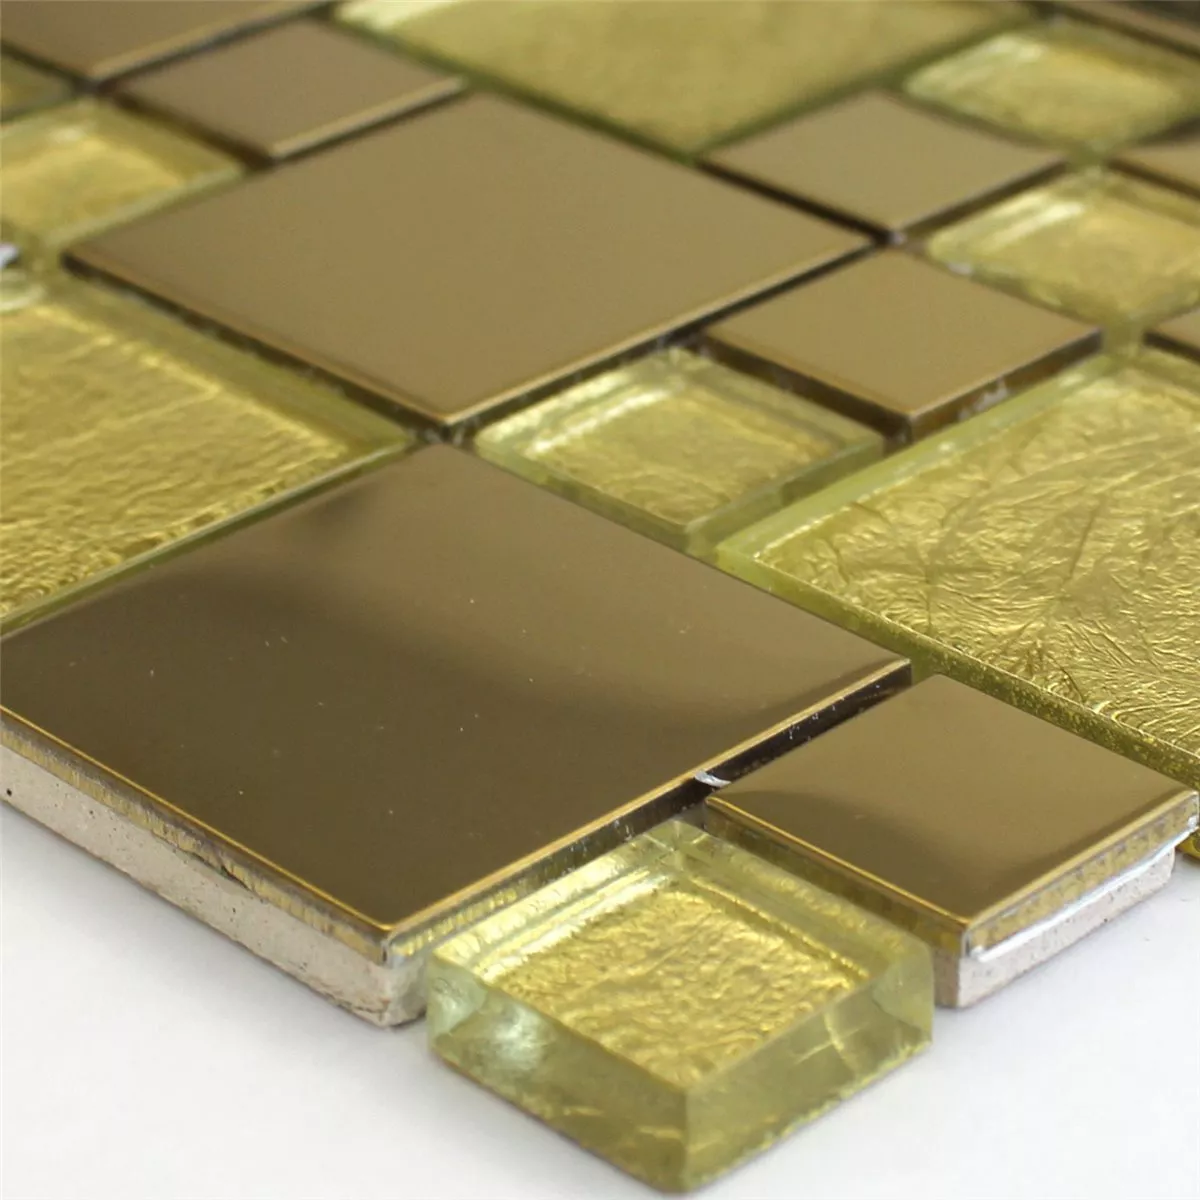 Muster von Mosaikfliesen Glas Edelstahl Metall Gold